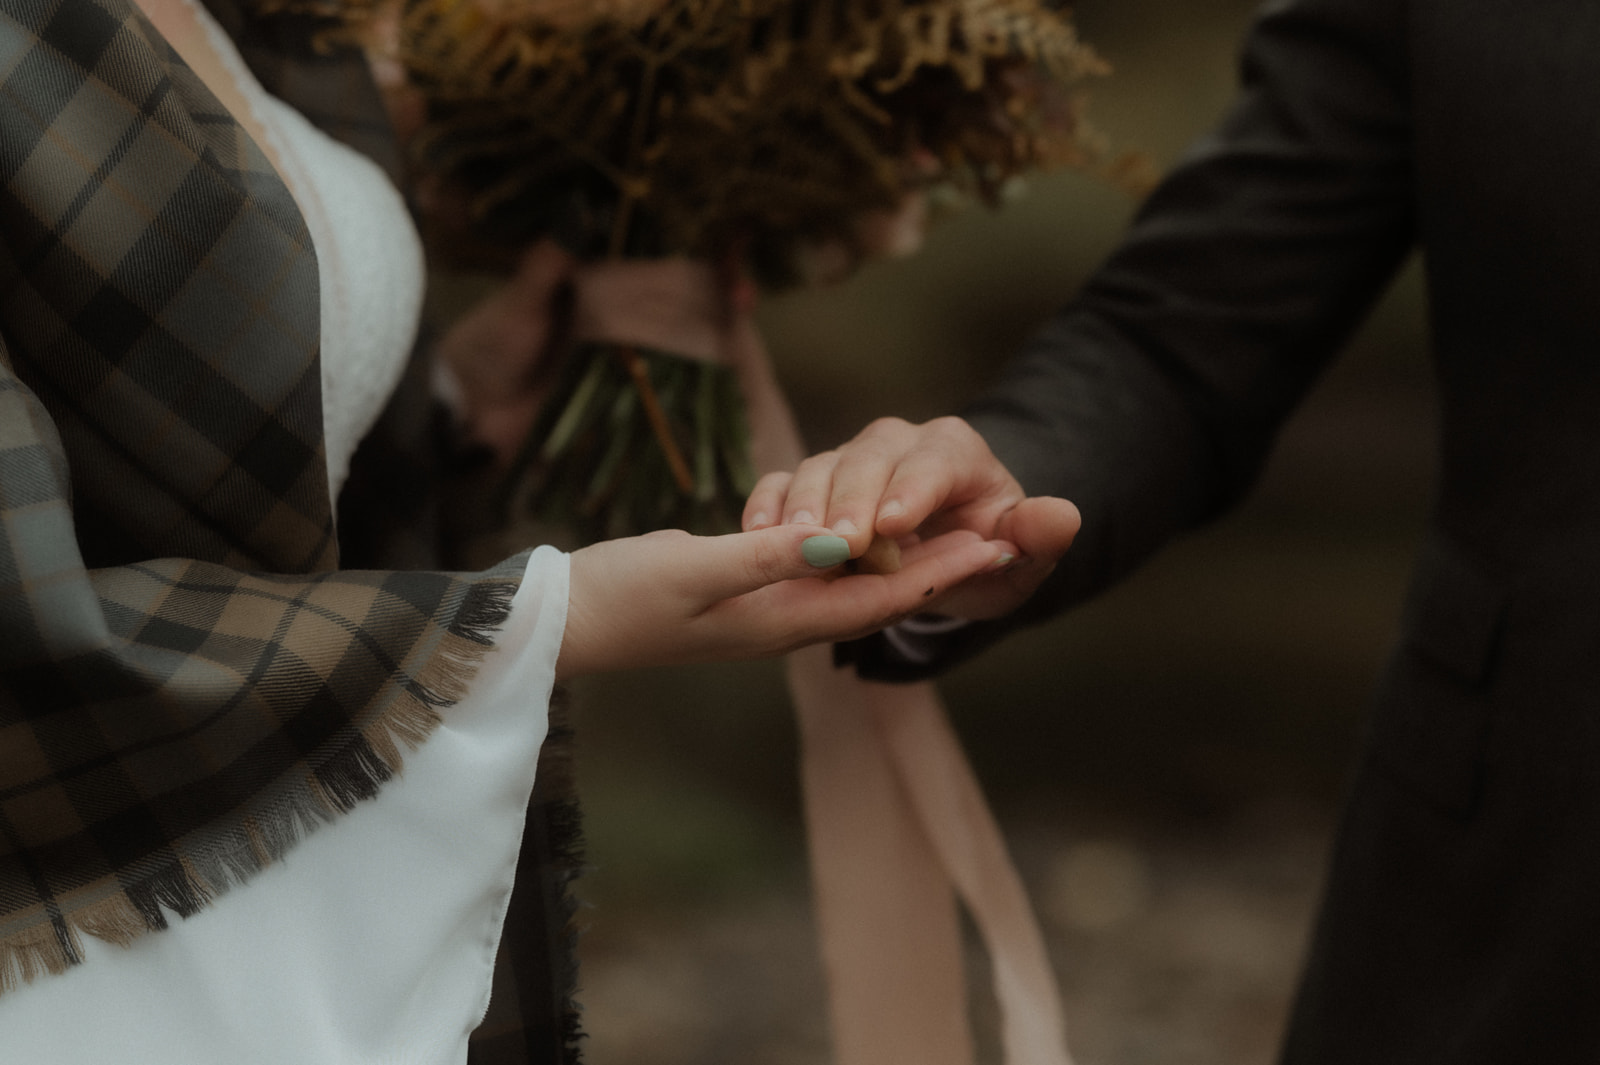 Serena e Andrea - Un matrimonio ancestrale nelle Highlands scozzesi